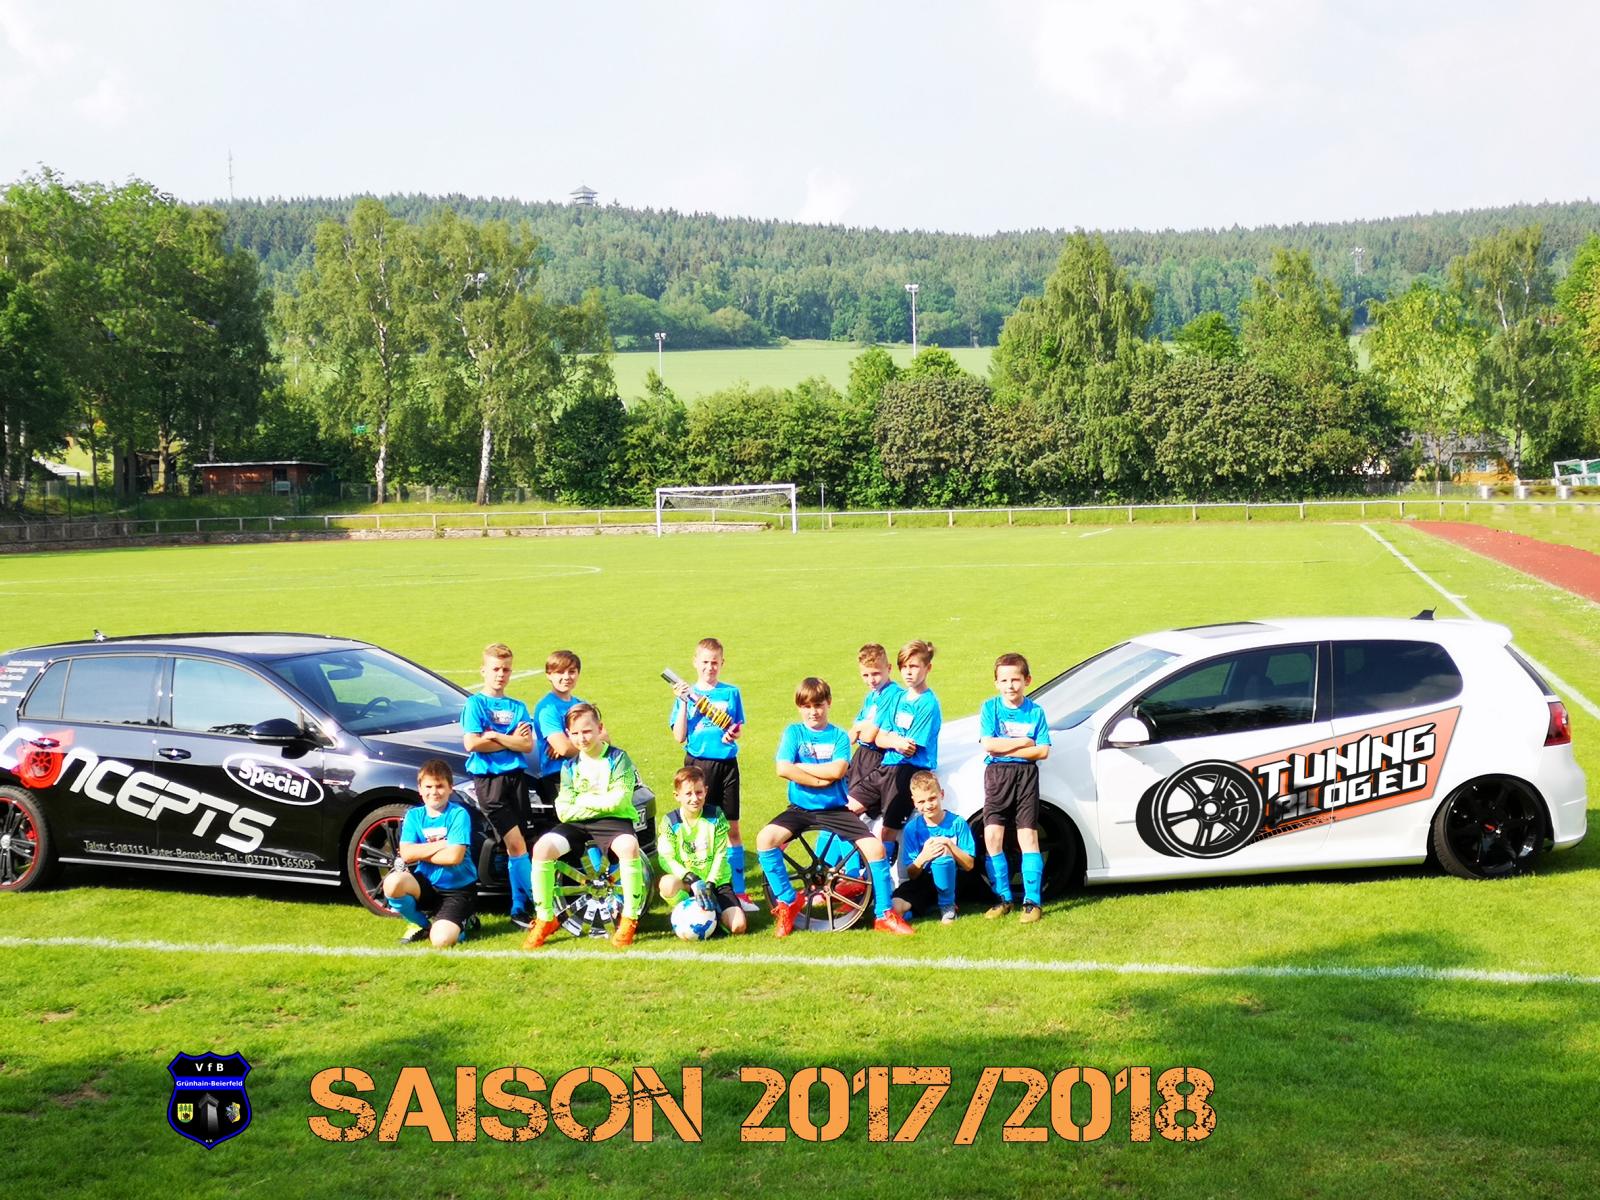 tuningblog.eu Sponsoring 2018 2 1 tuningblog.eu sponsert die E Jugend des VfB Grünhain Beierfeld e.V.